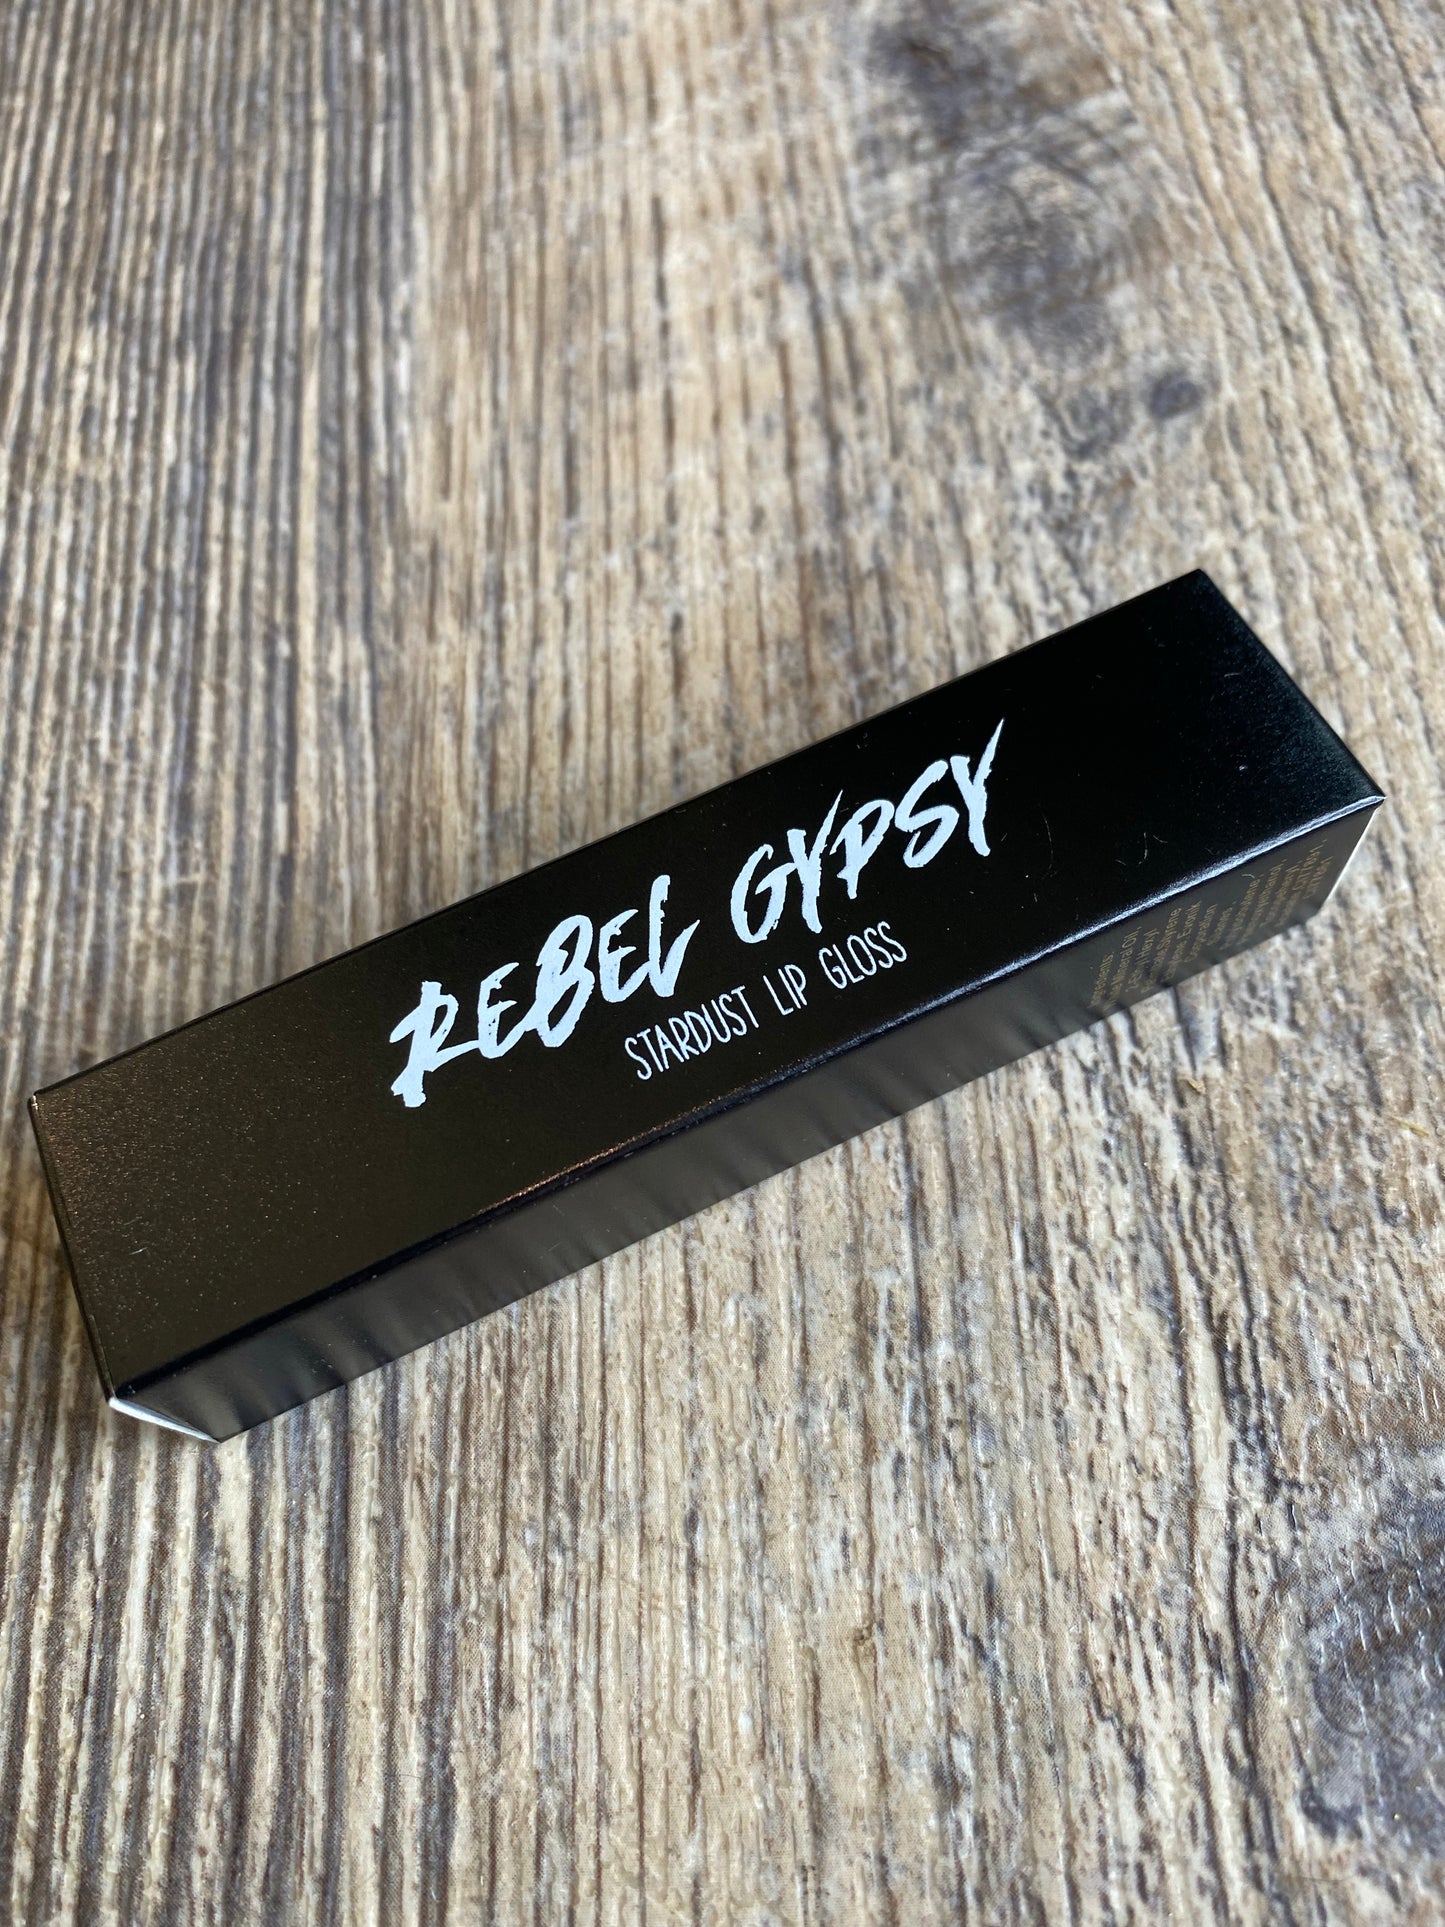 Rebel Gypsy Stardust Lip Gloss